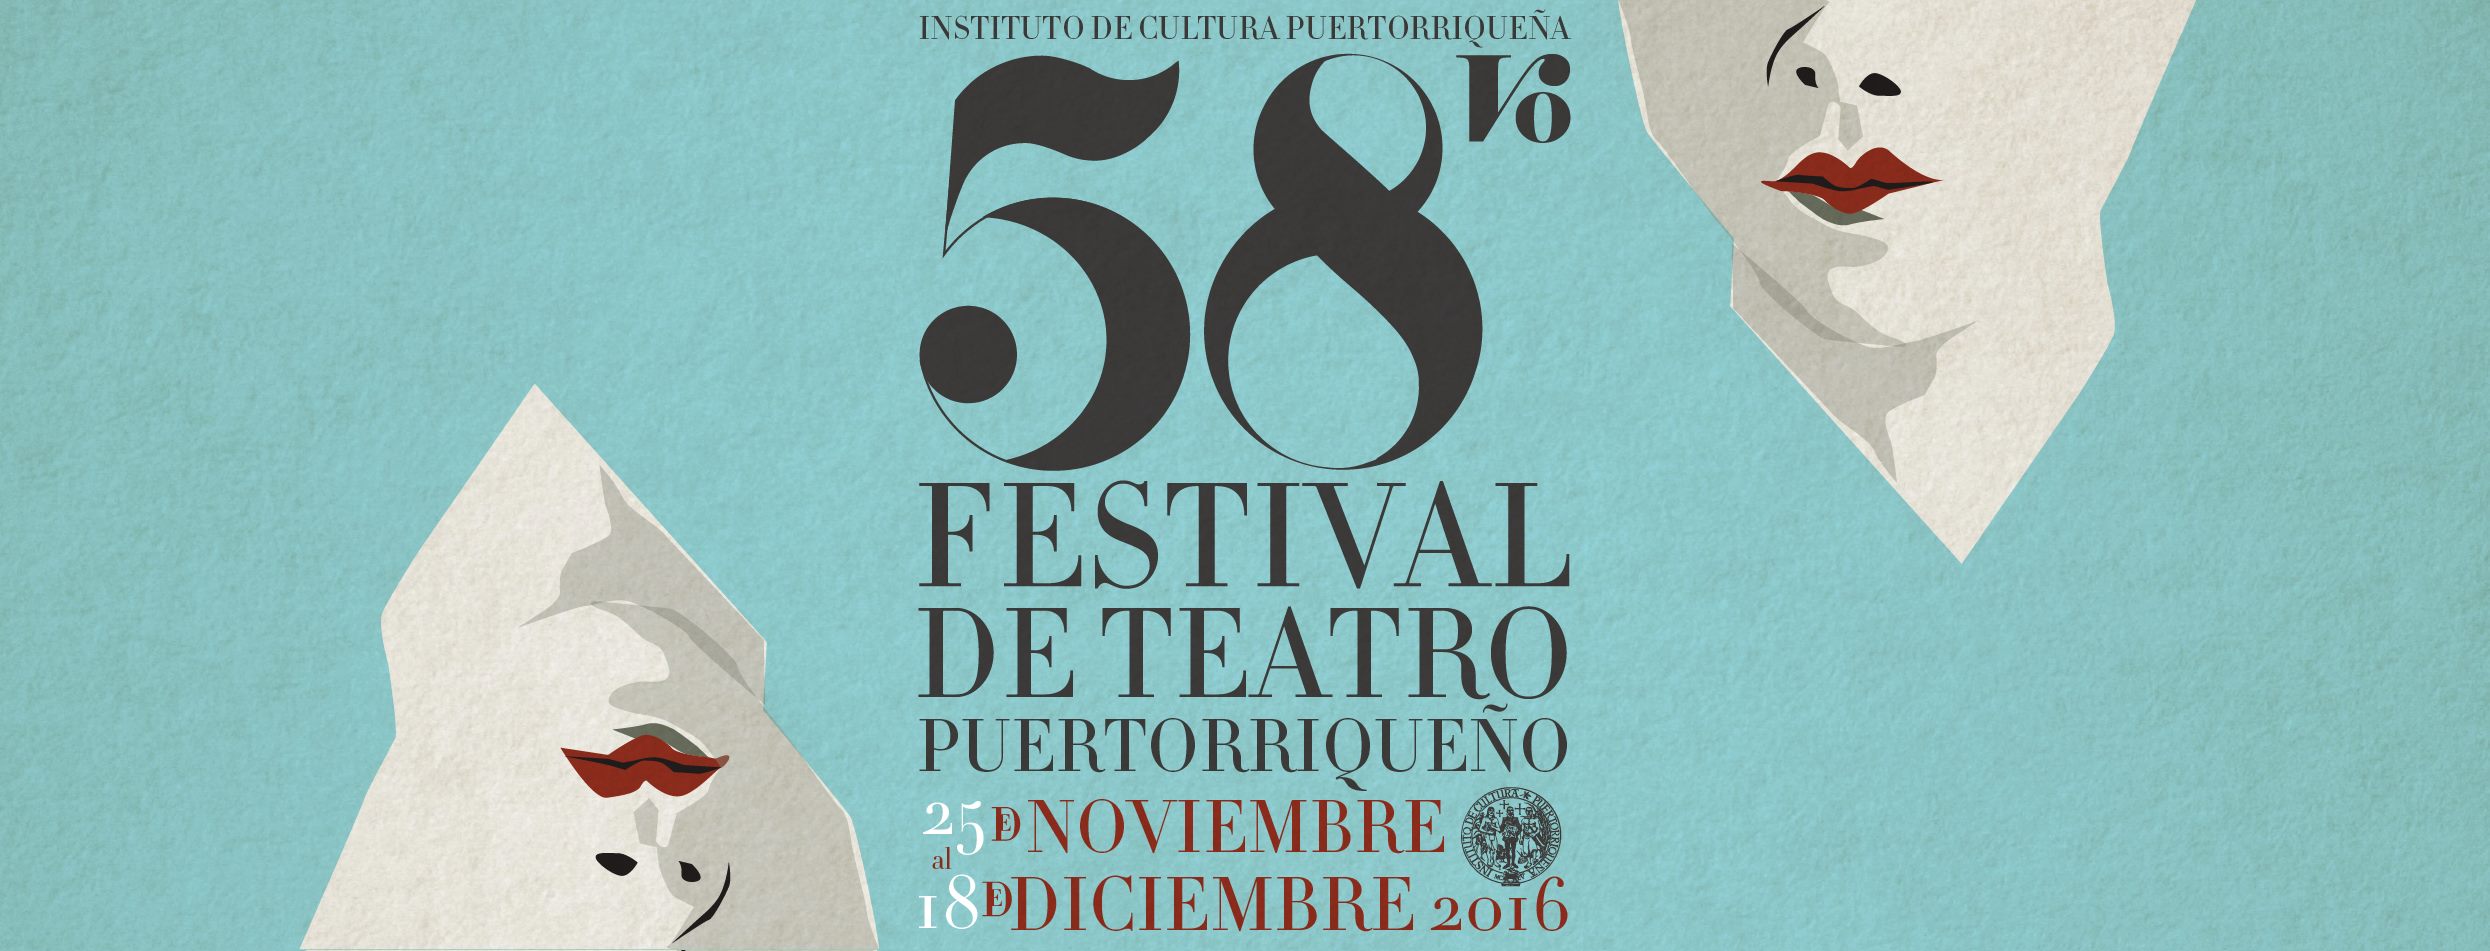 El 58vo Festival de Teatro Puertorriqueño